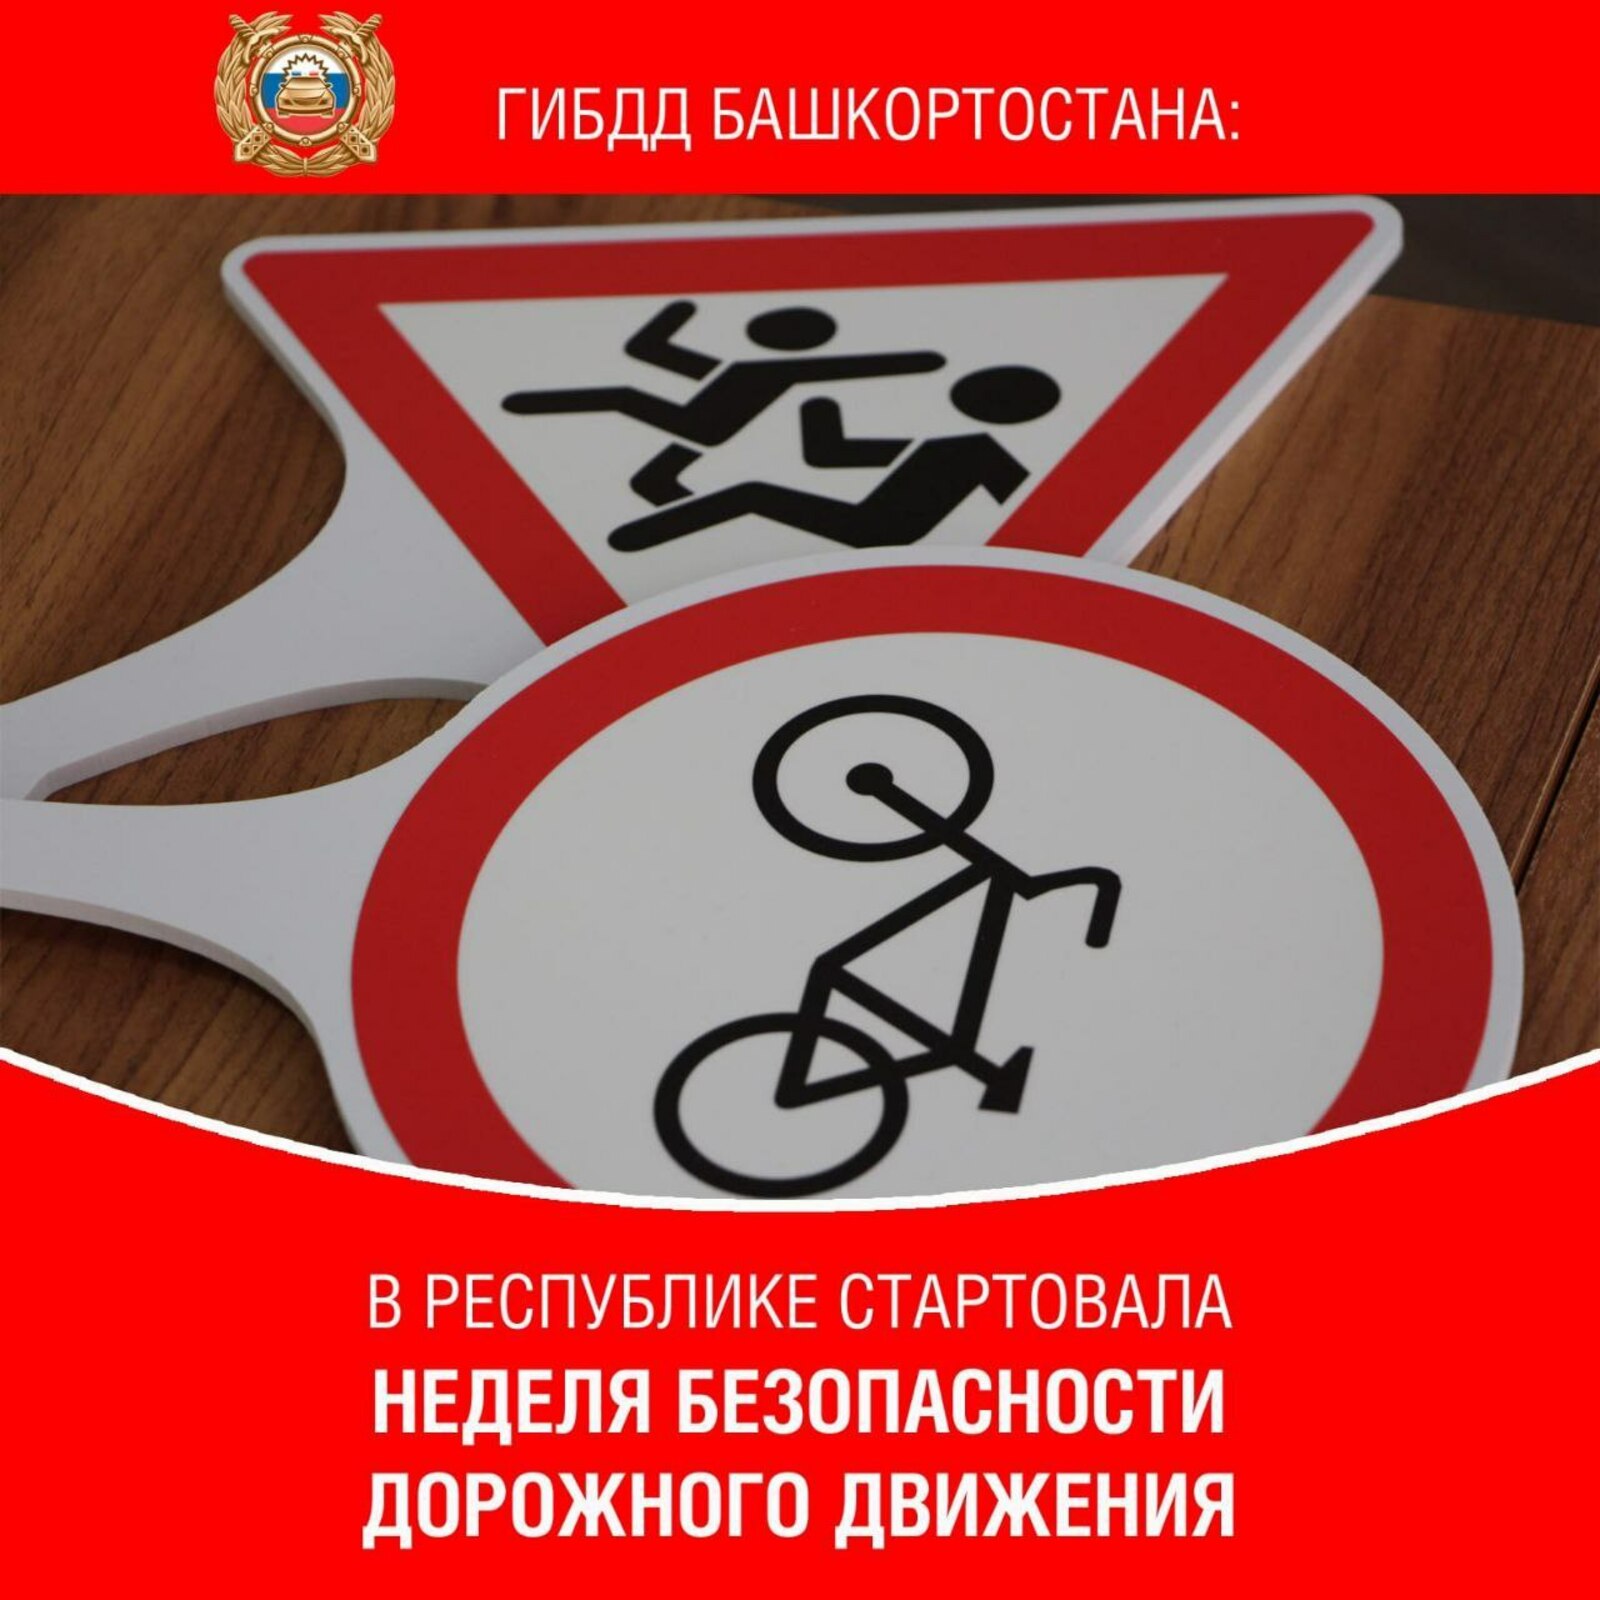 Башкирия участвует во Всероссийской неделе безопасности дорожного движения